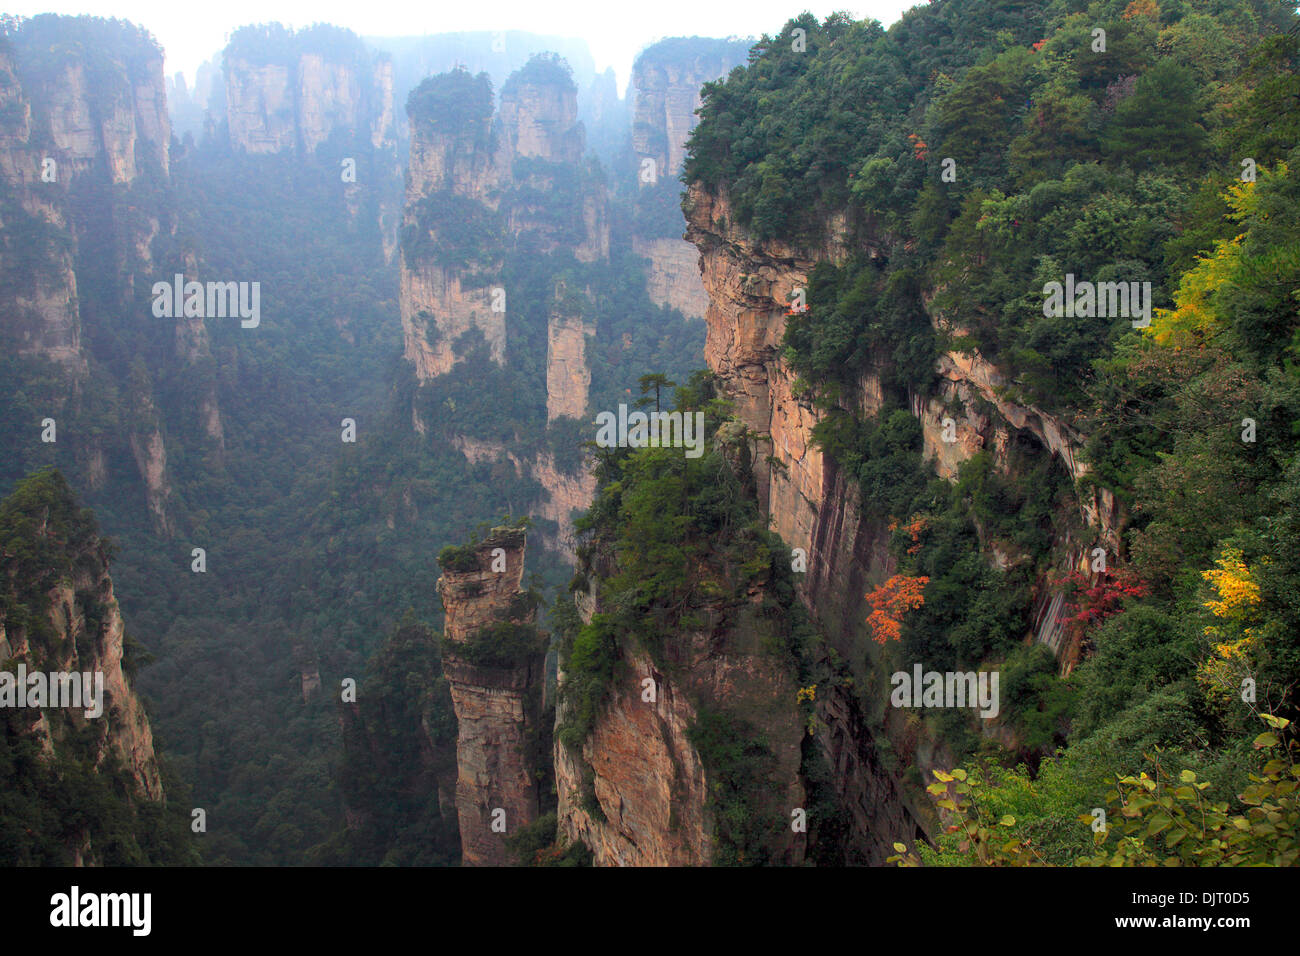 Parc forestier national de Zhangjiajie, Hunan, Chine Banque D'Images